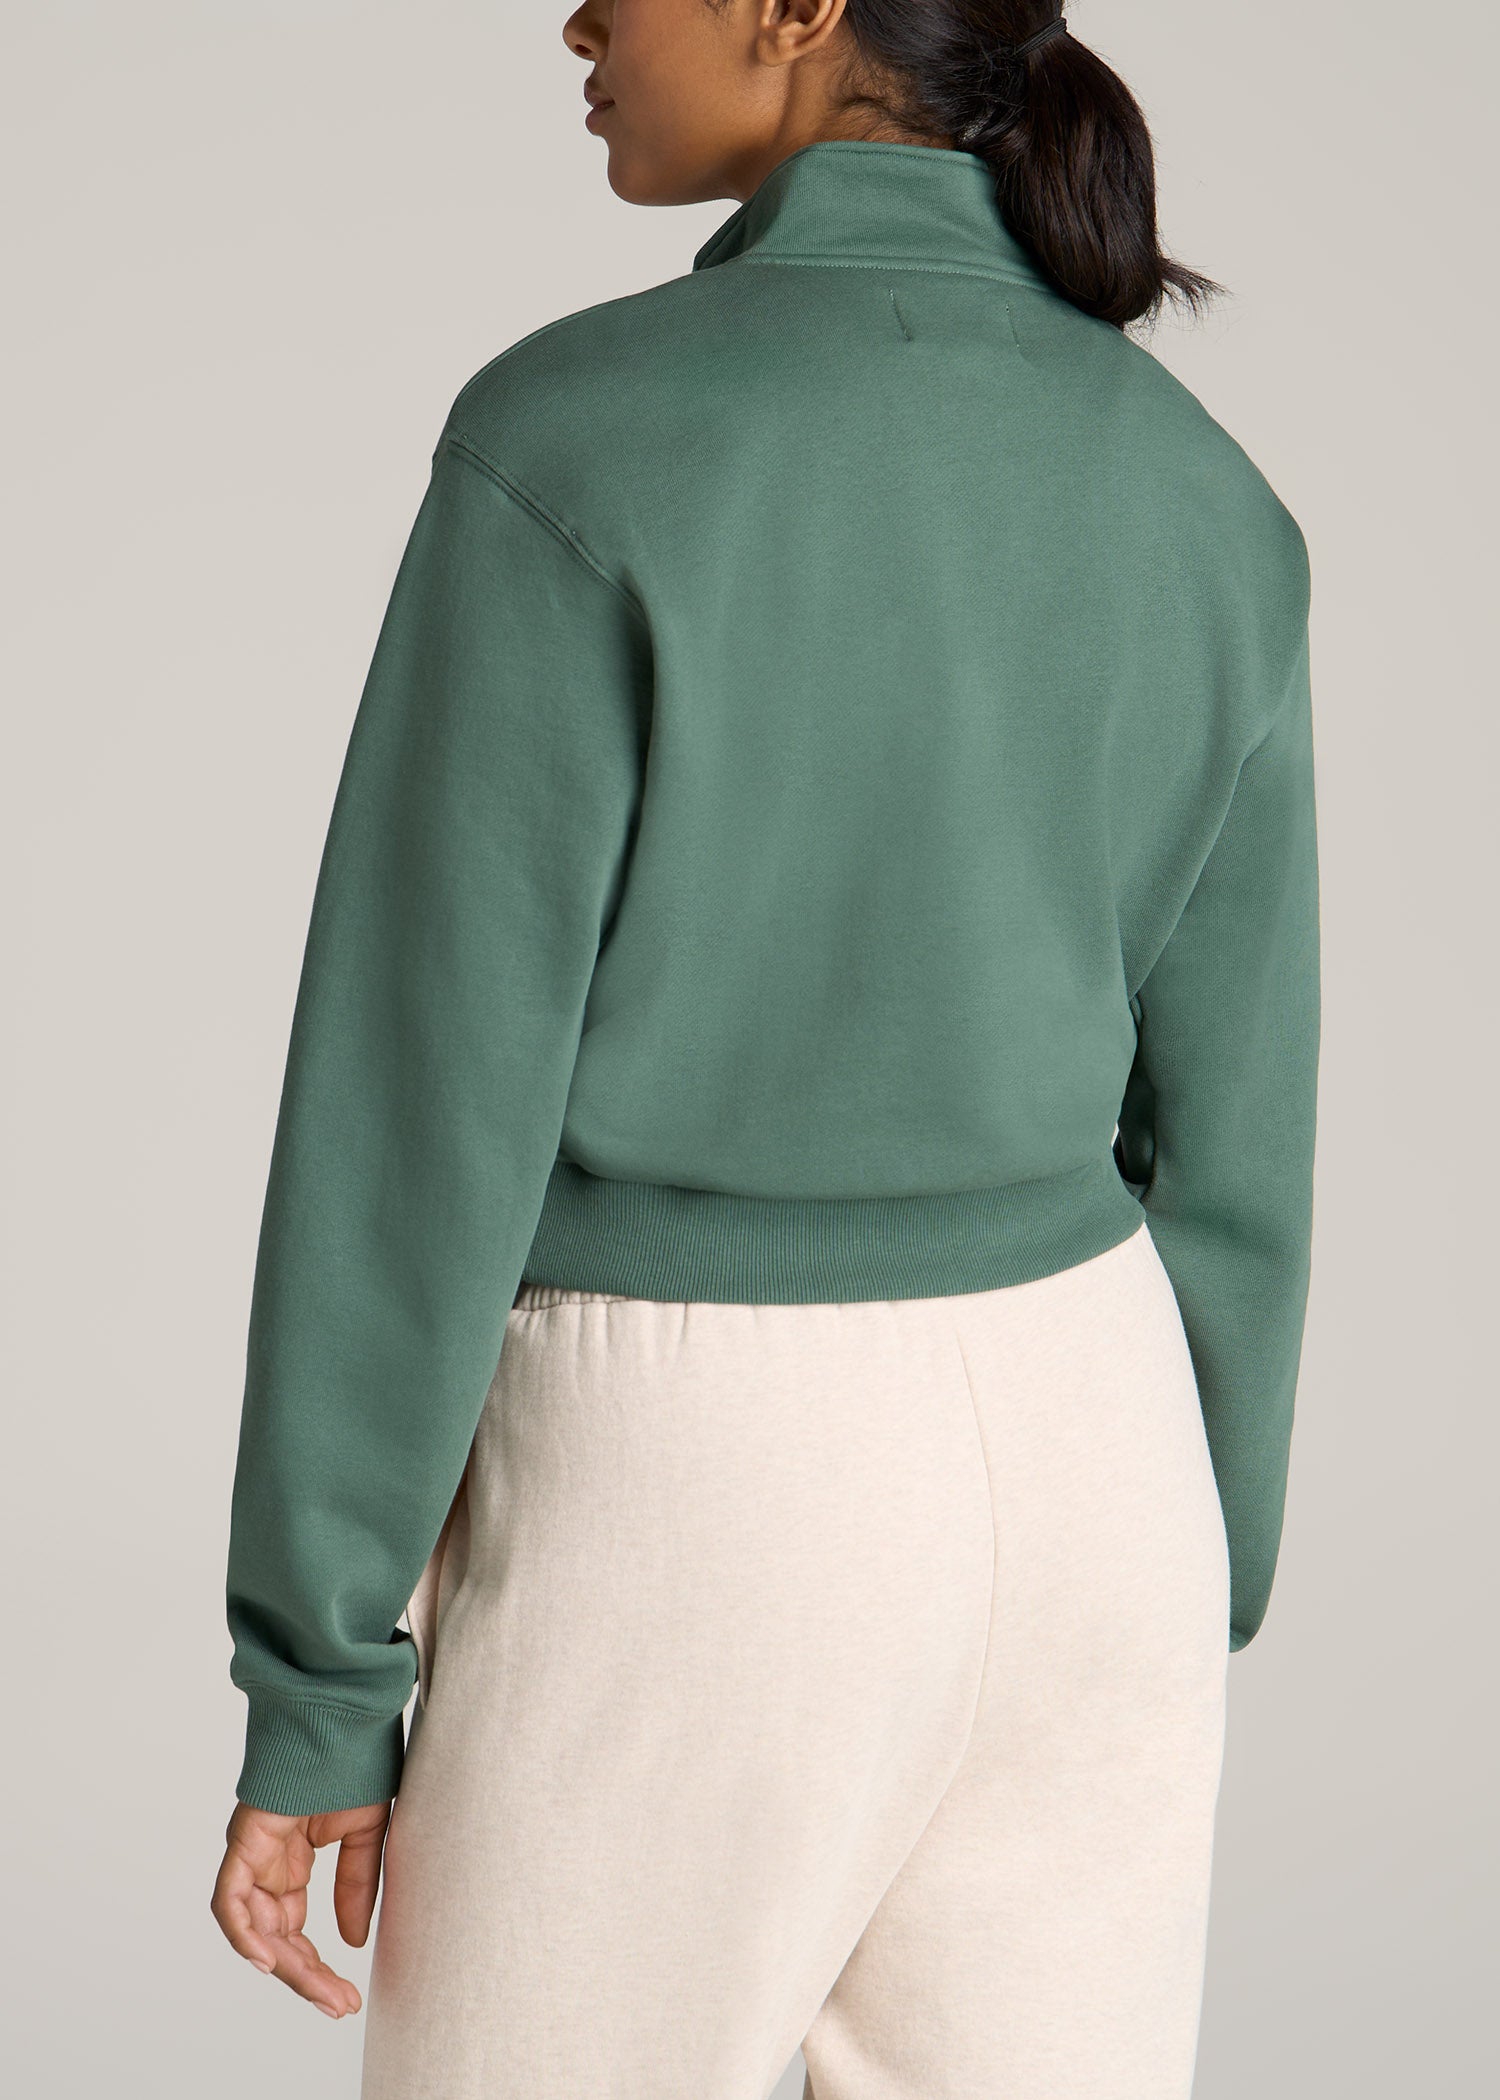 Wearever Fleece Relaxed Women's Tall Sweatpants Emerald – American